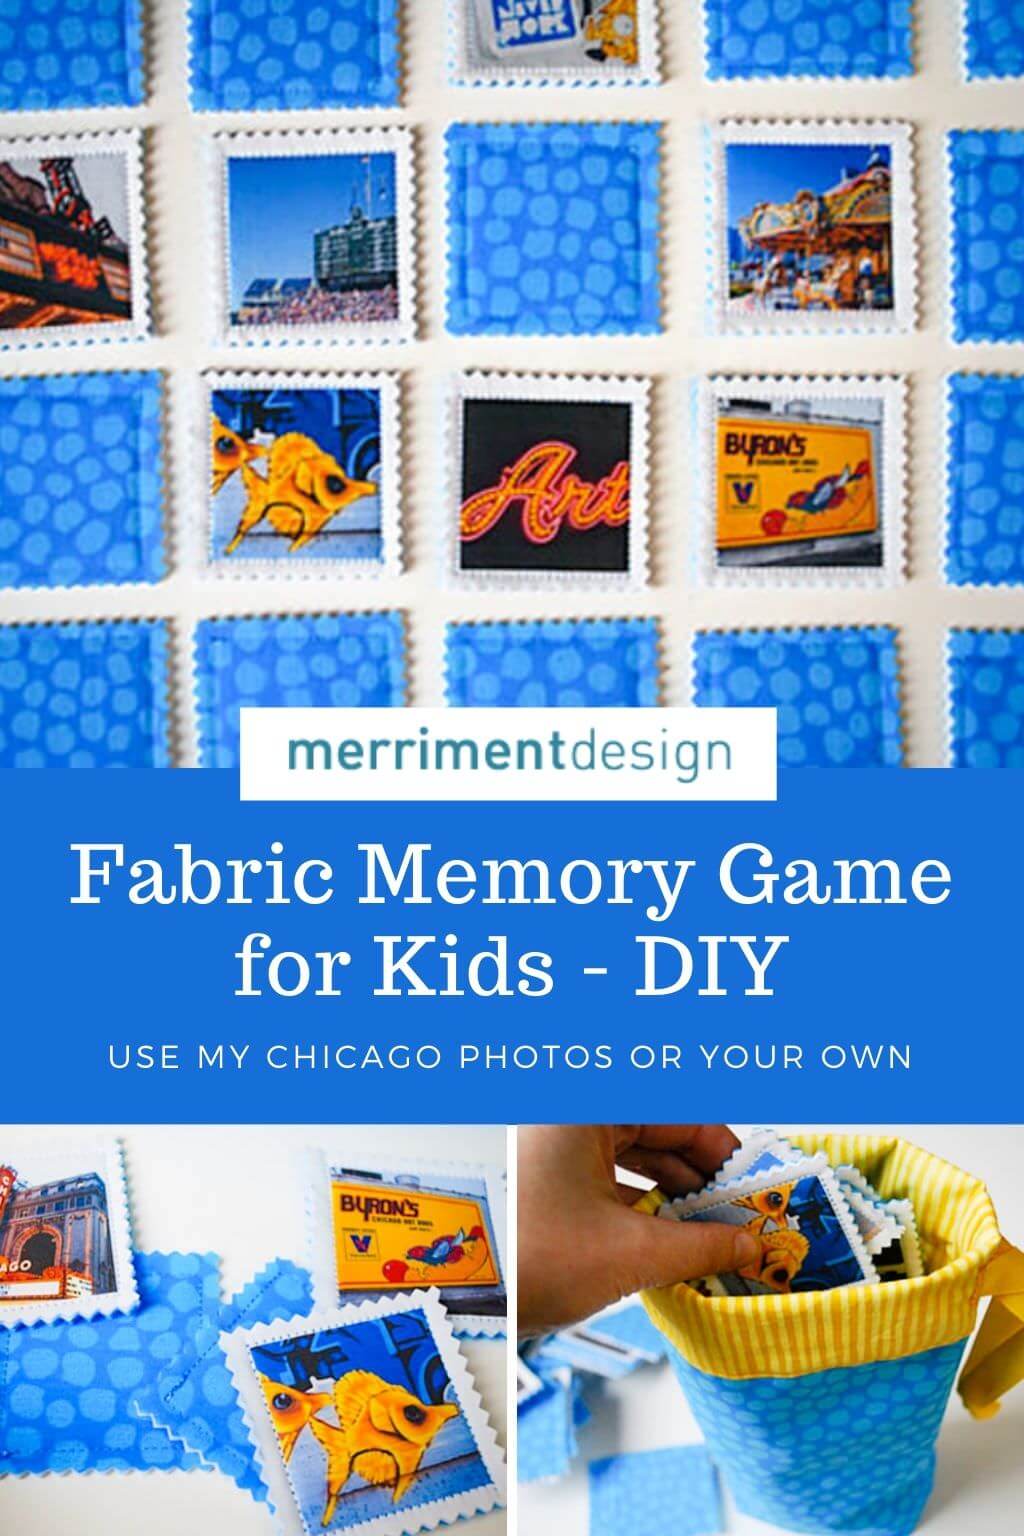 Fabric memory game for kids DIY tutorial